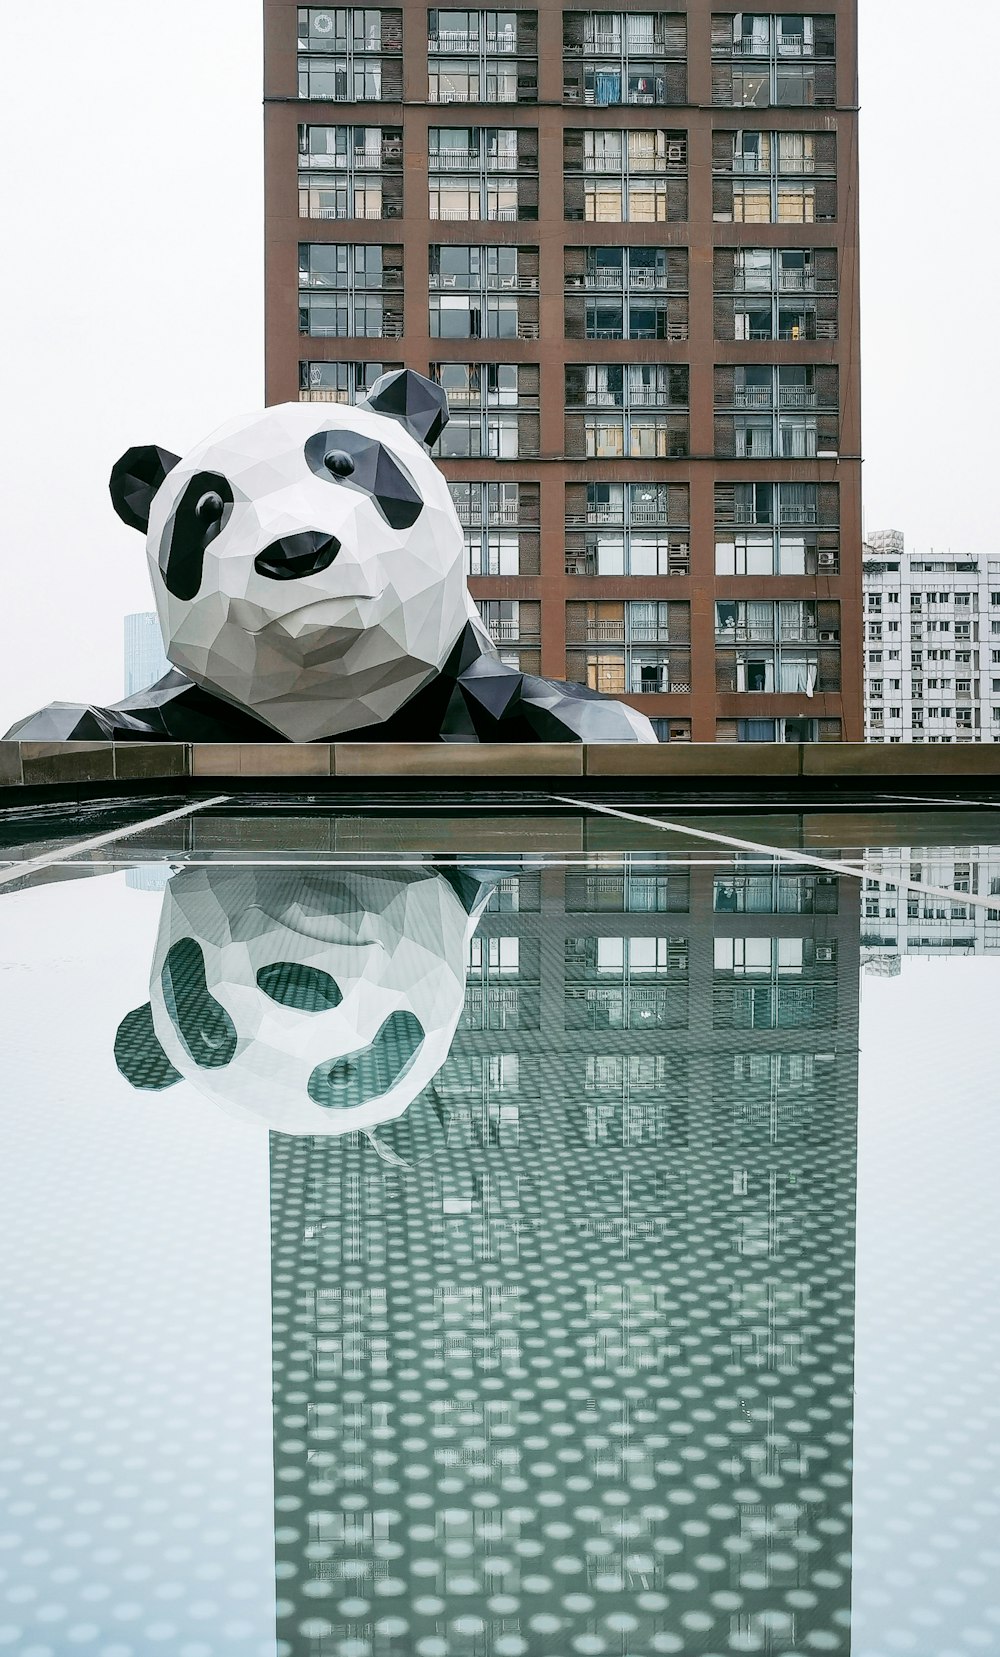 Un oso panda gigante sentado encima de una piscina